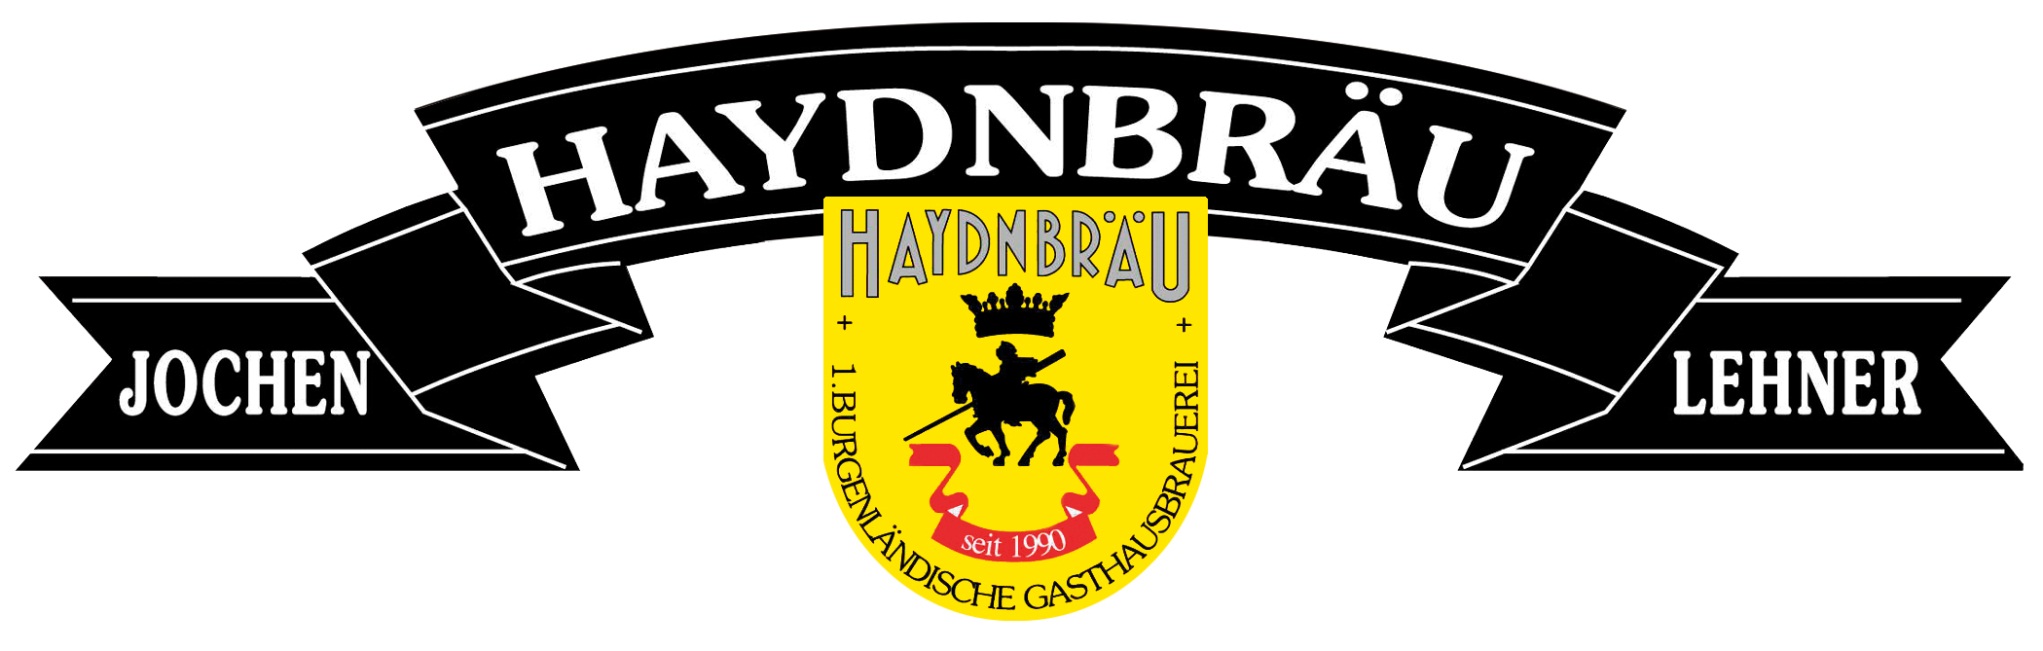 Haydnbräu